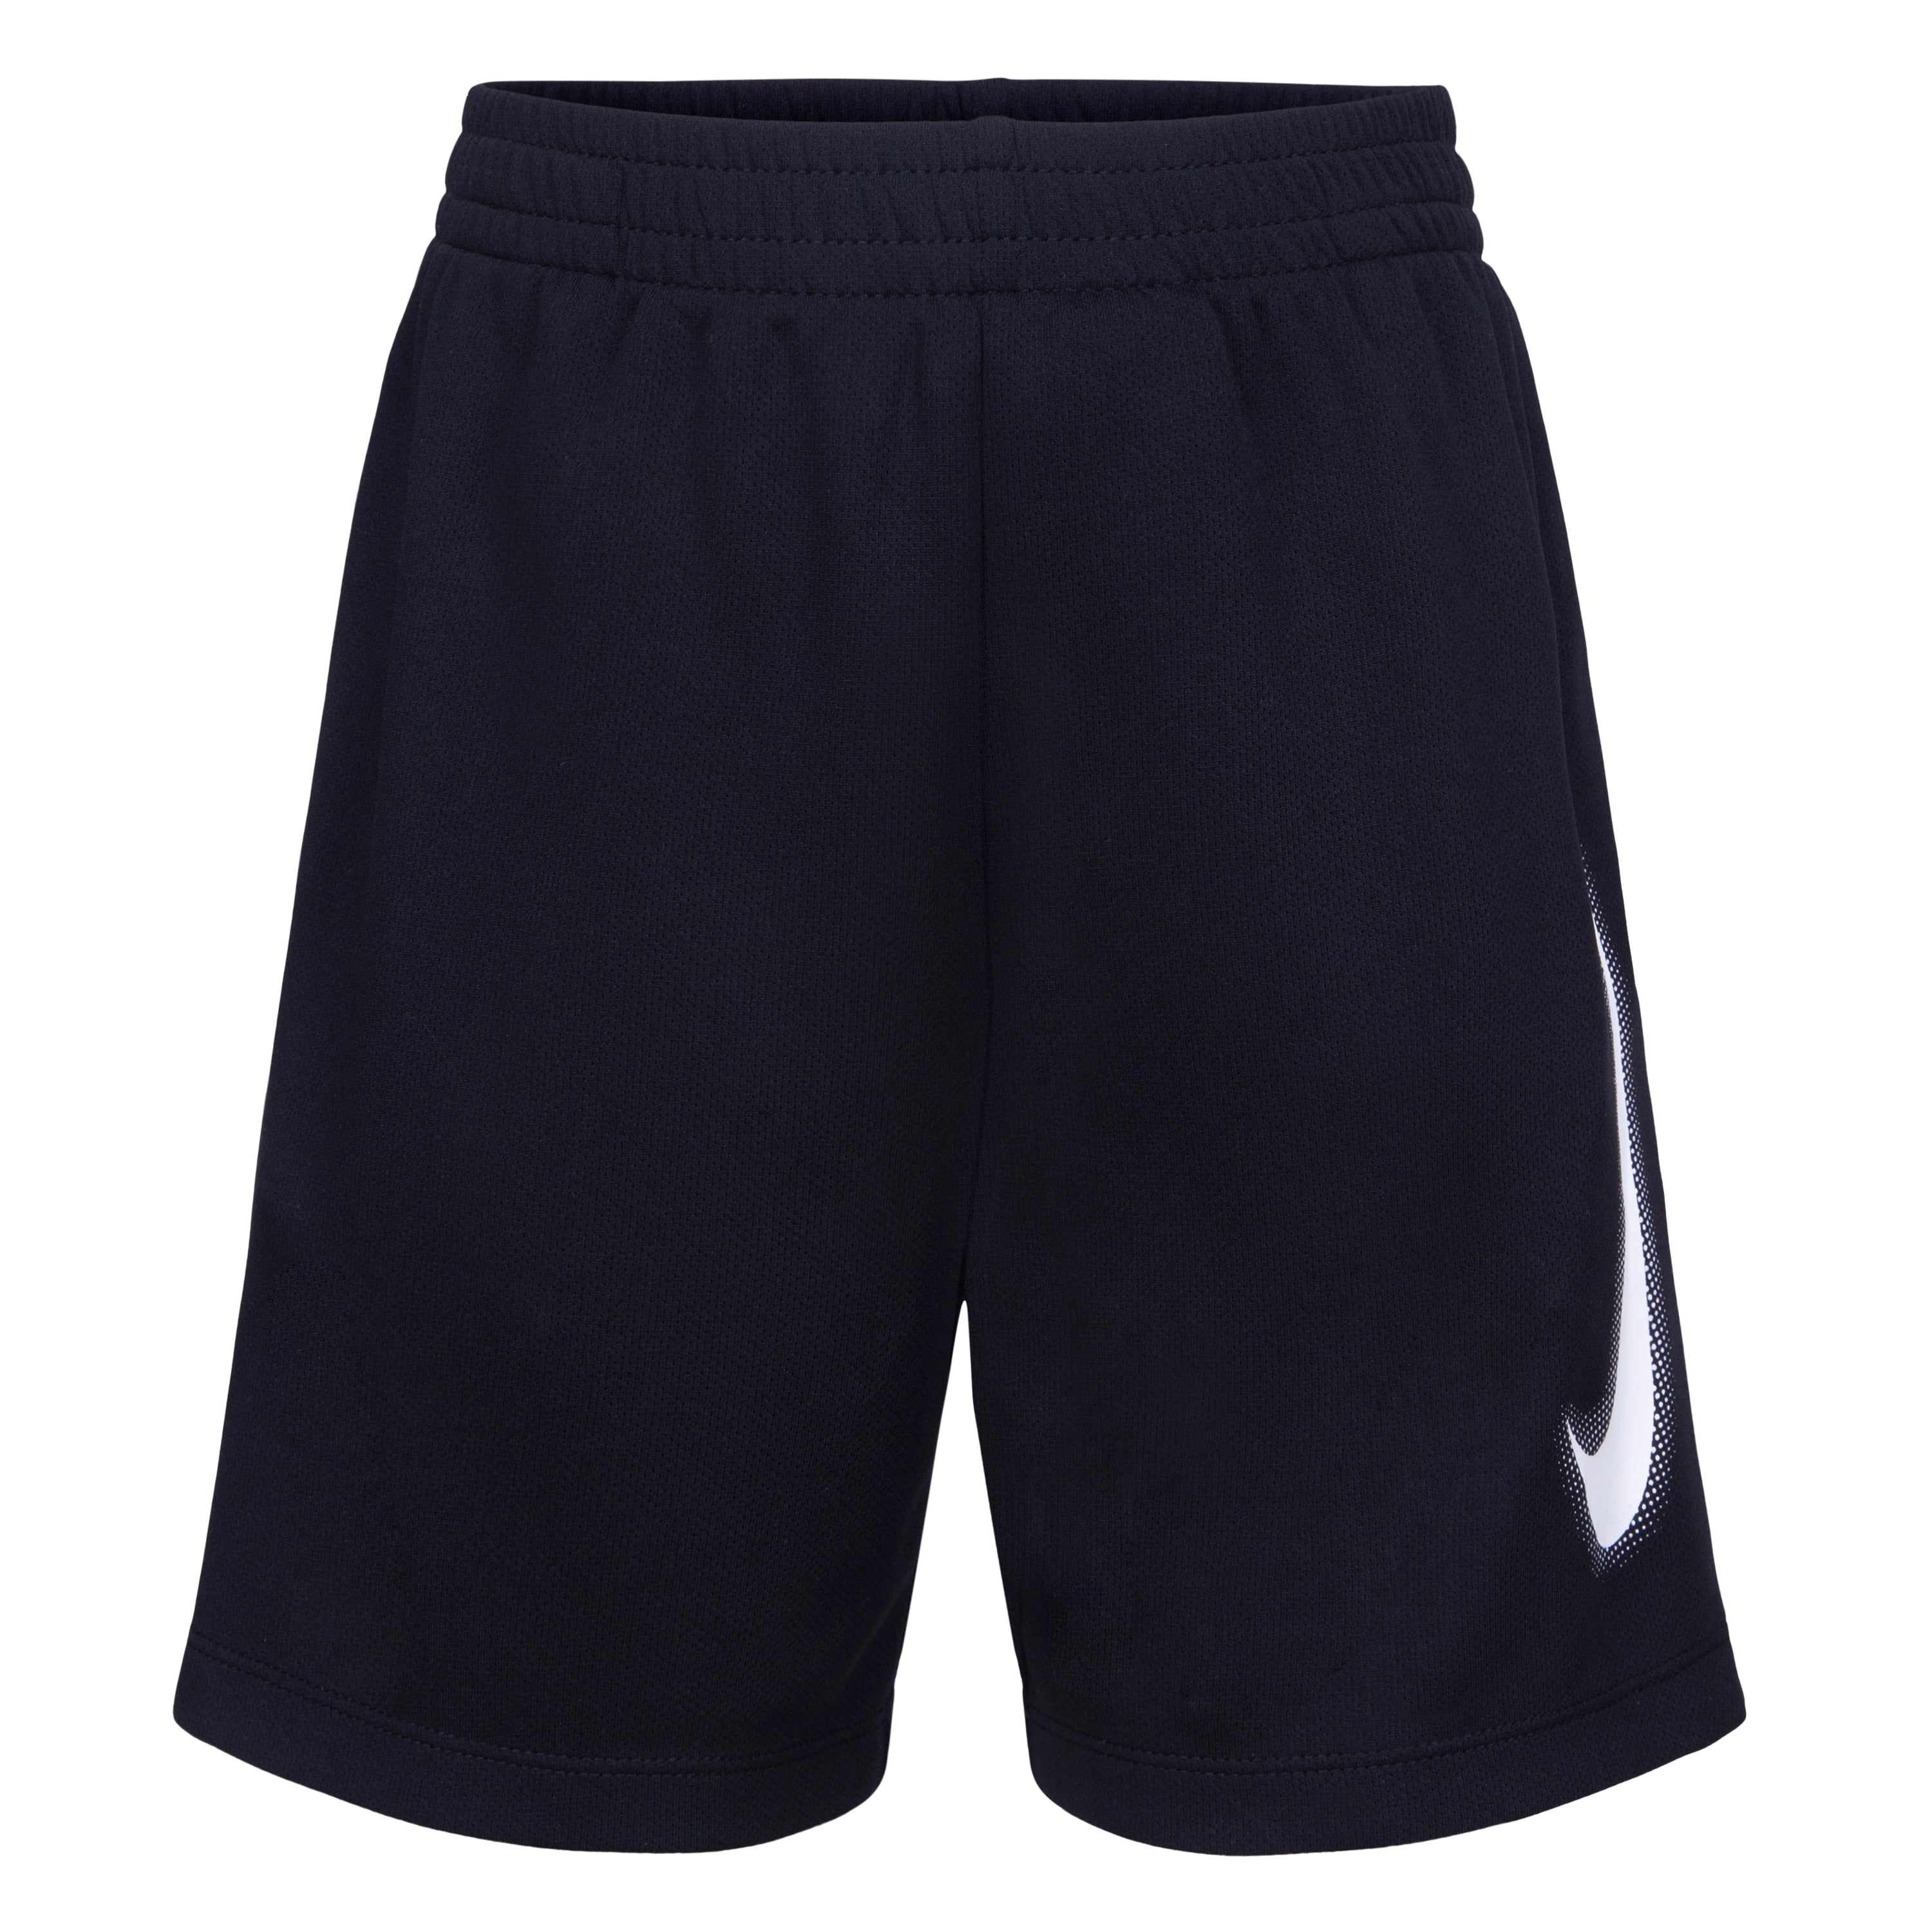 Nike Black Dri-Fit Adp Shorts – Rookie USA